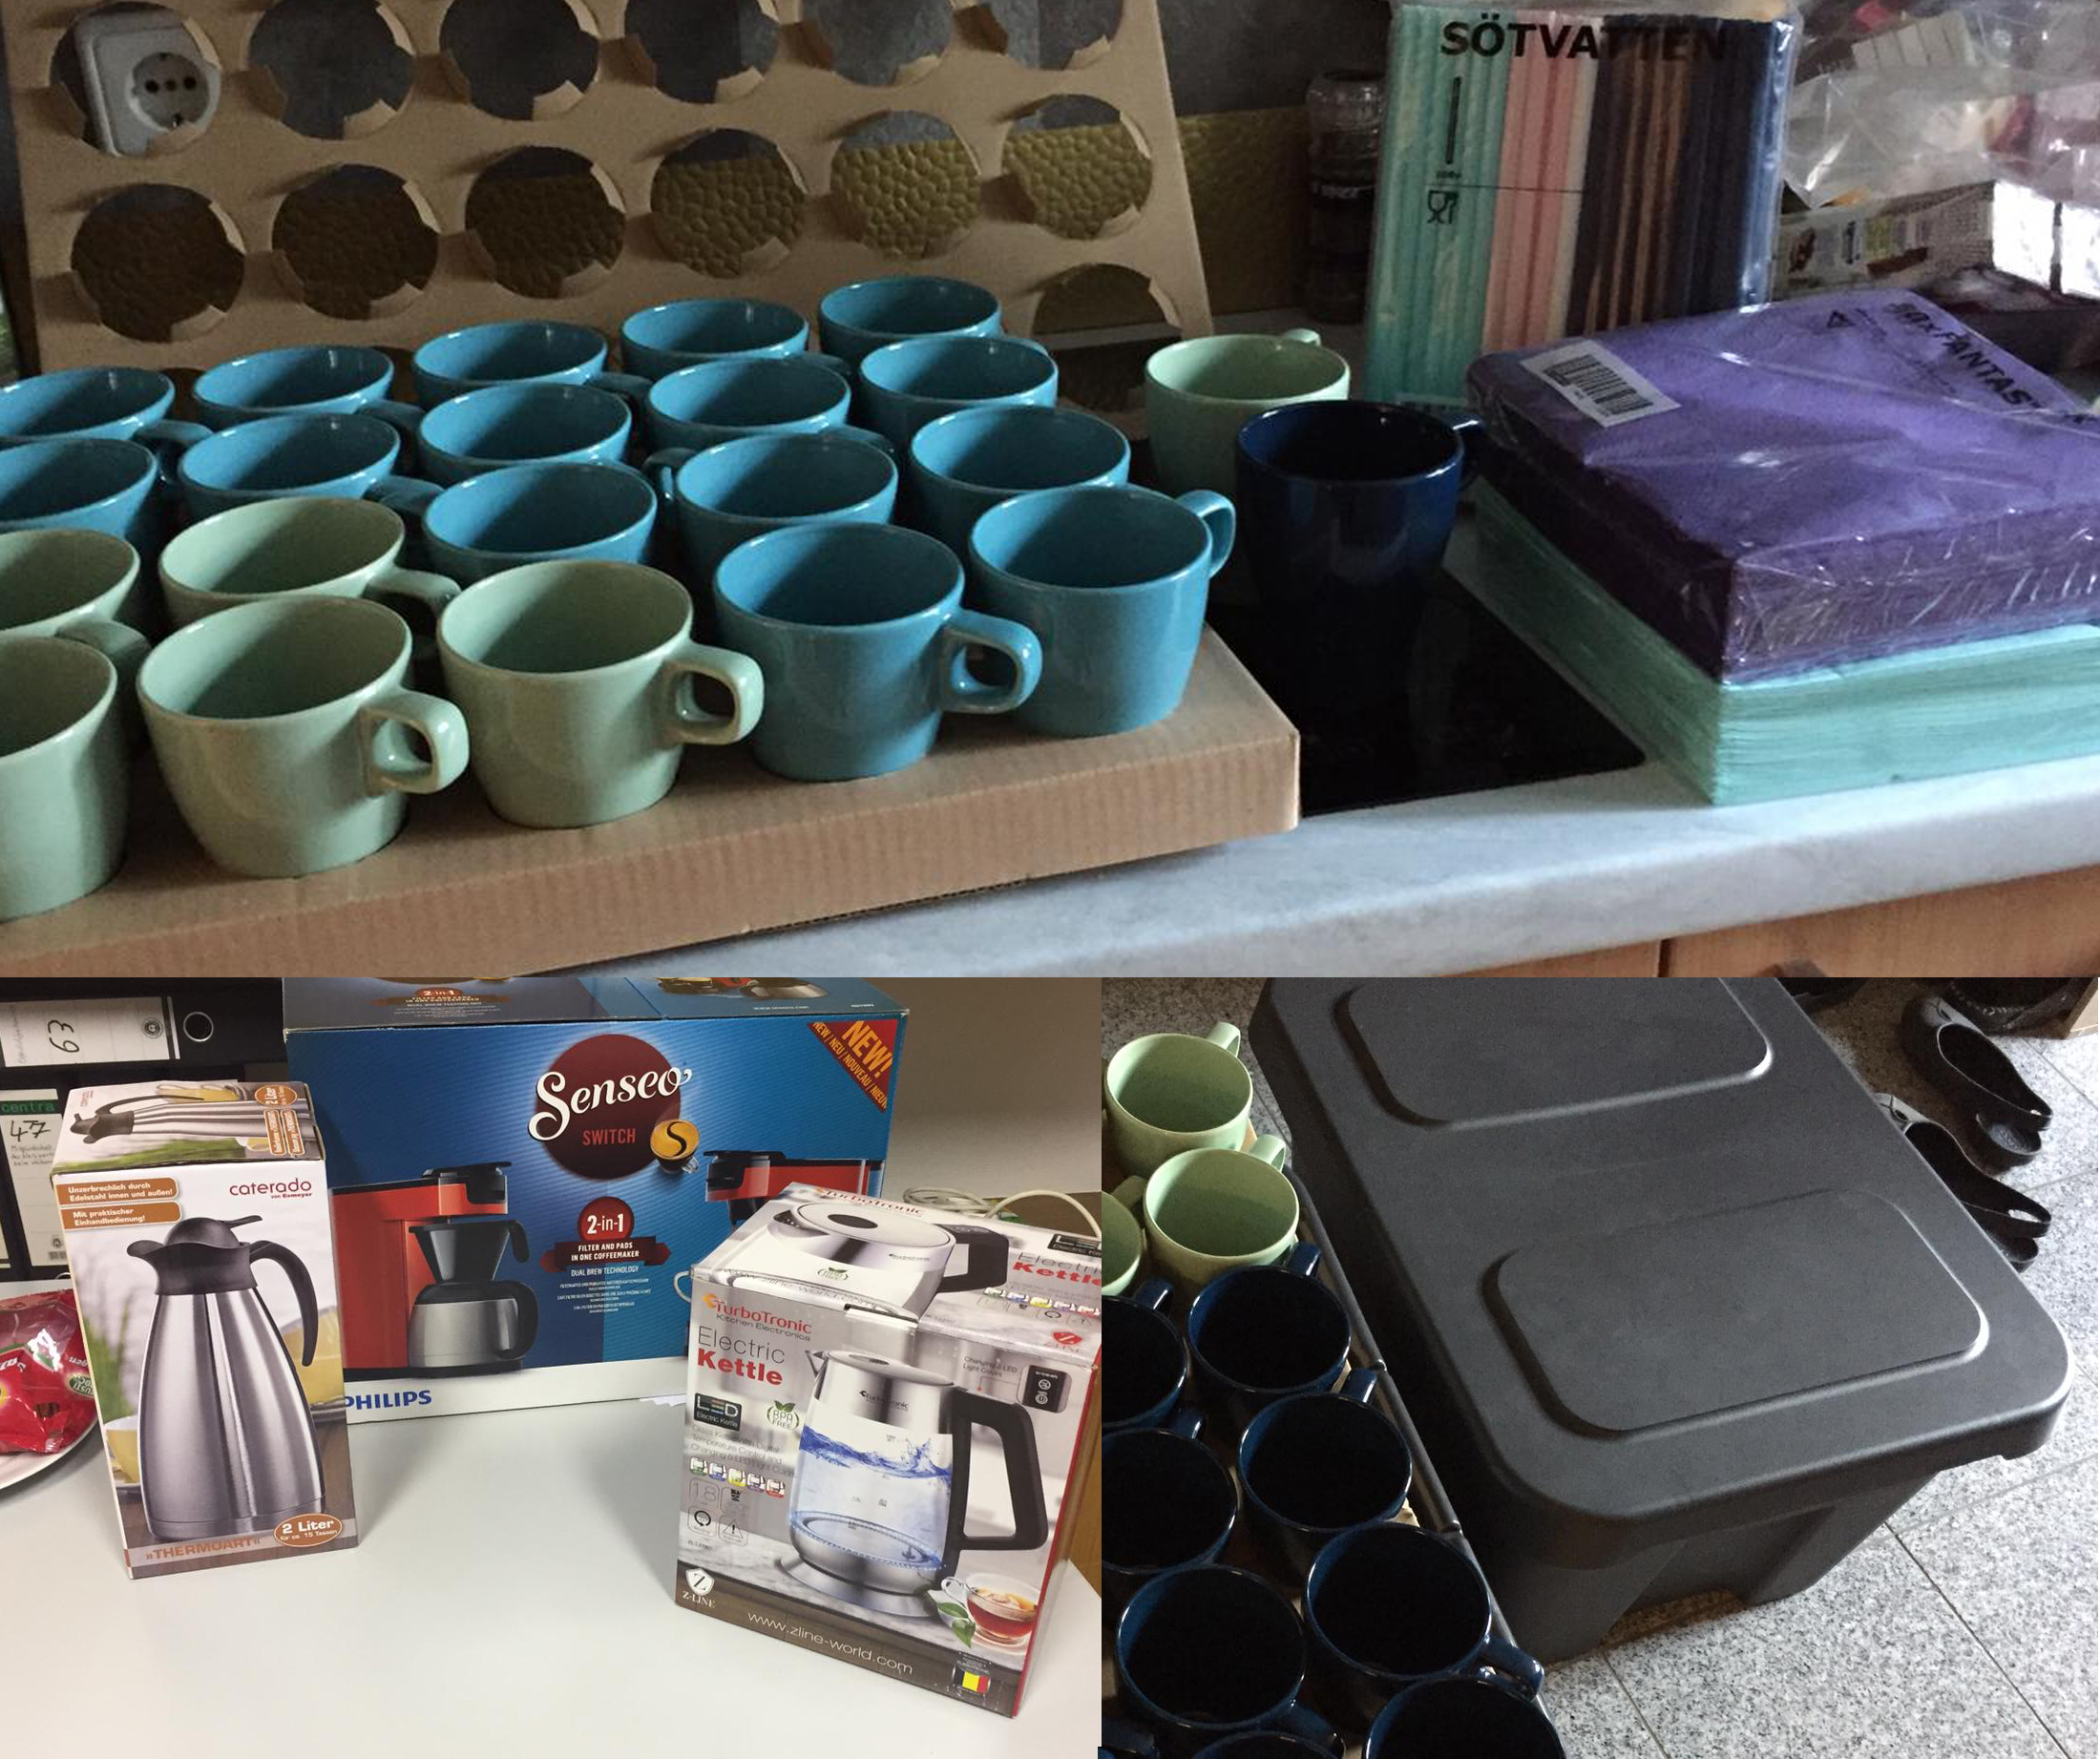 Bild von verschiedenfarbigen Tassen, Servietten, Strohhalmen, Küchengeräten und einer Transportbox